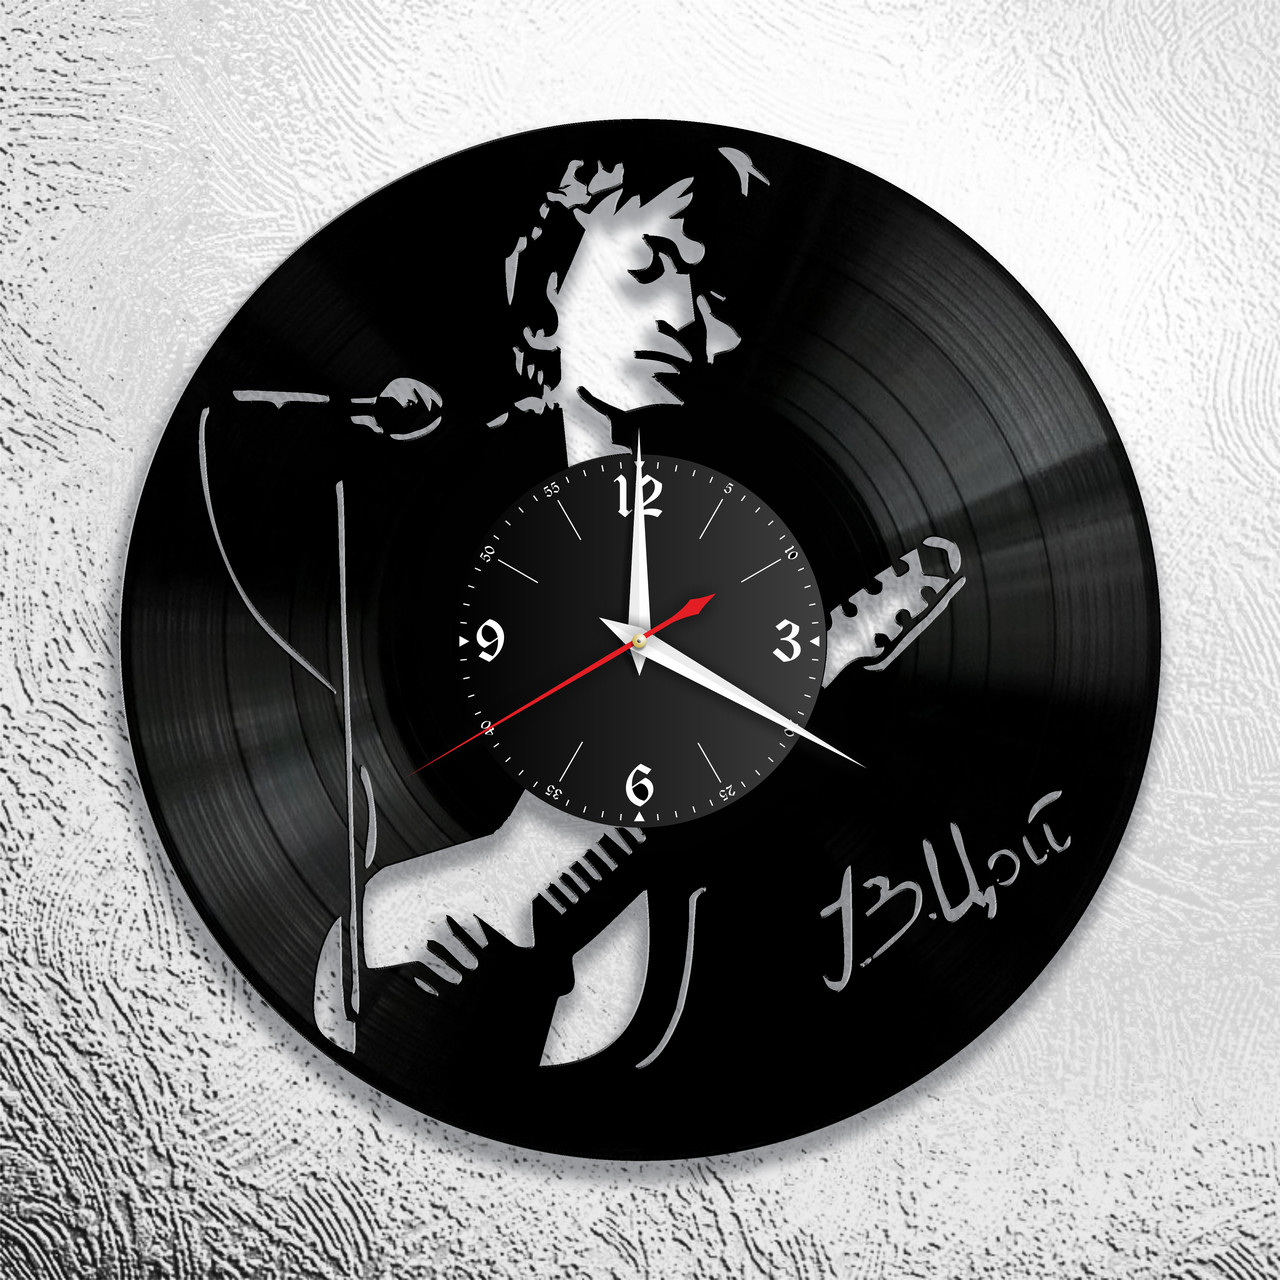 Оригинальные часы из виниловых пластинок "Виктор Цой" версия 5, фото 1